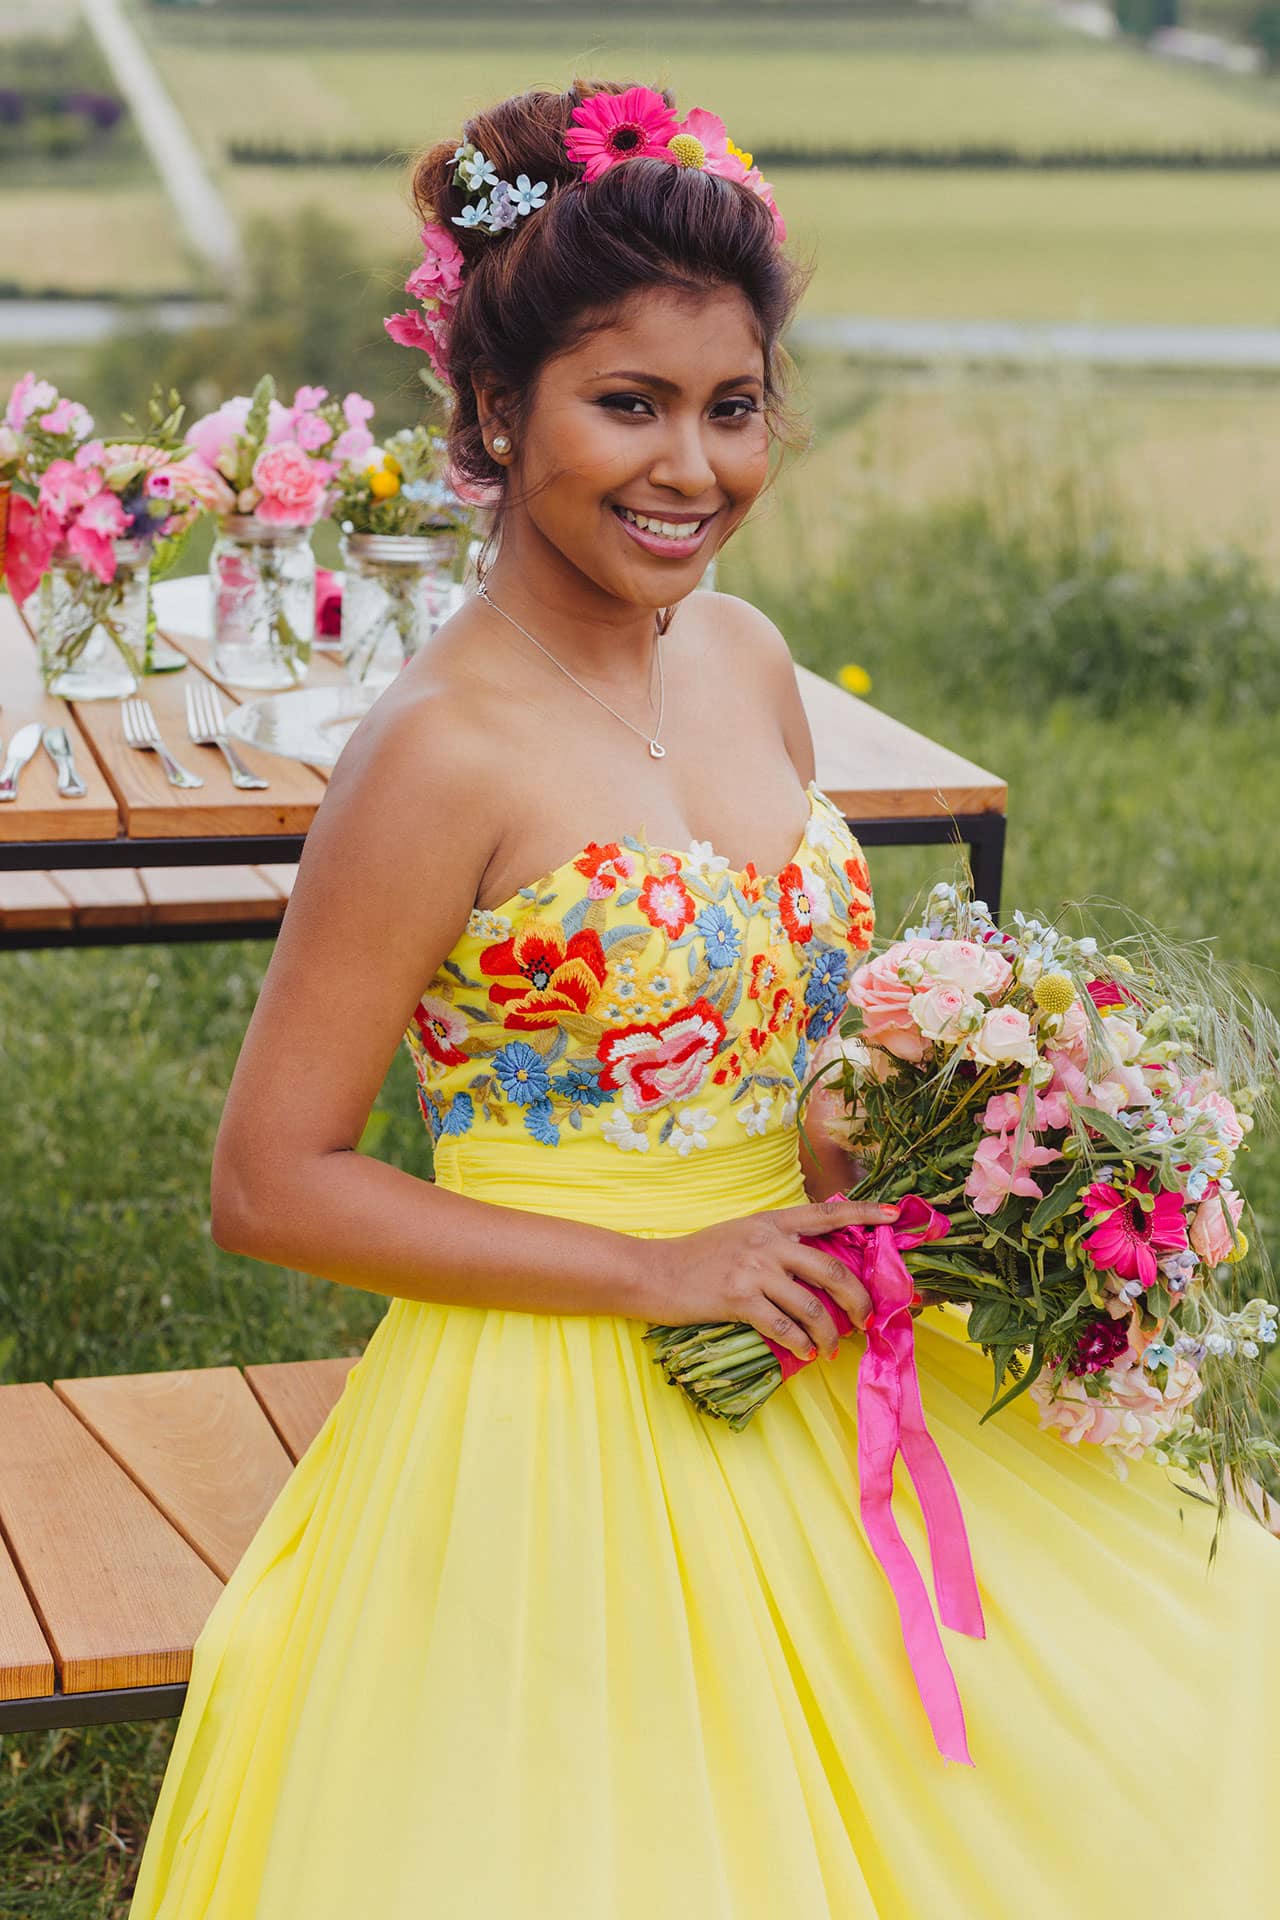 Braut im bunten Hochzeitskleid mit Blumenschmuck und Brautstrauß